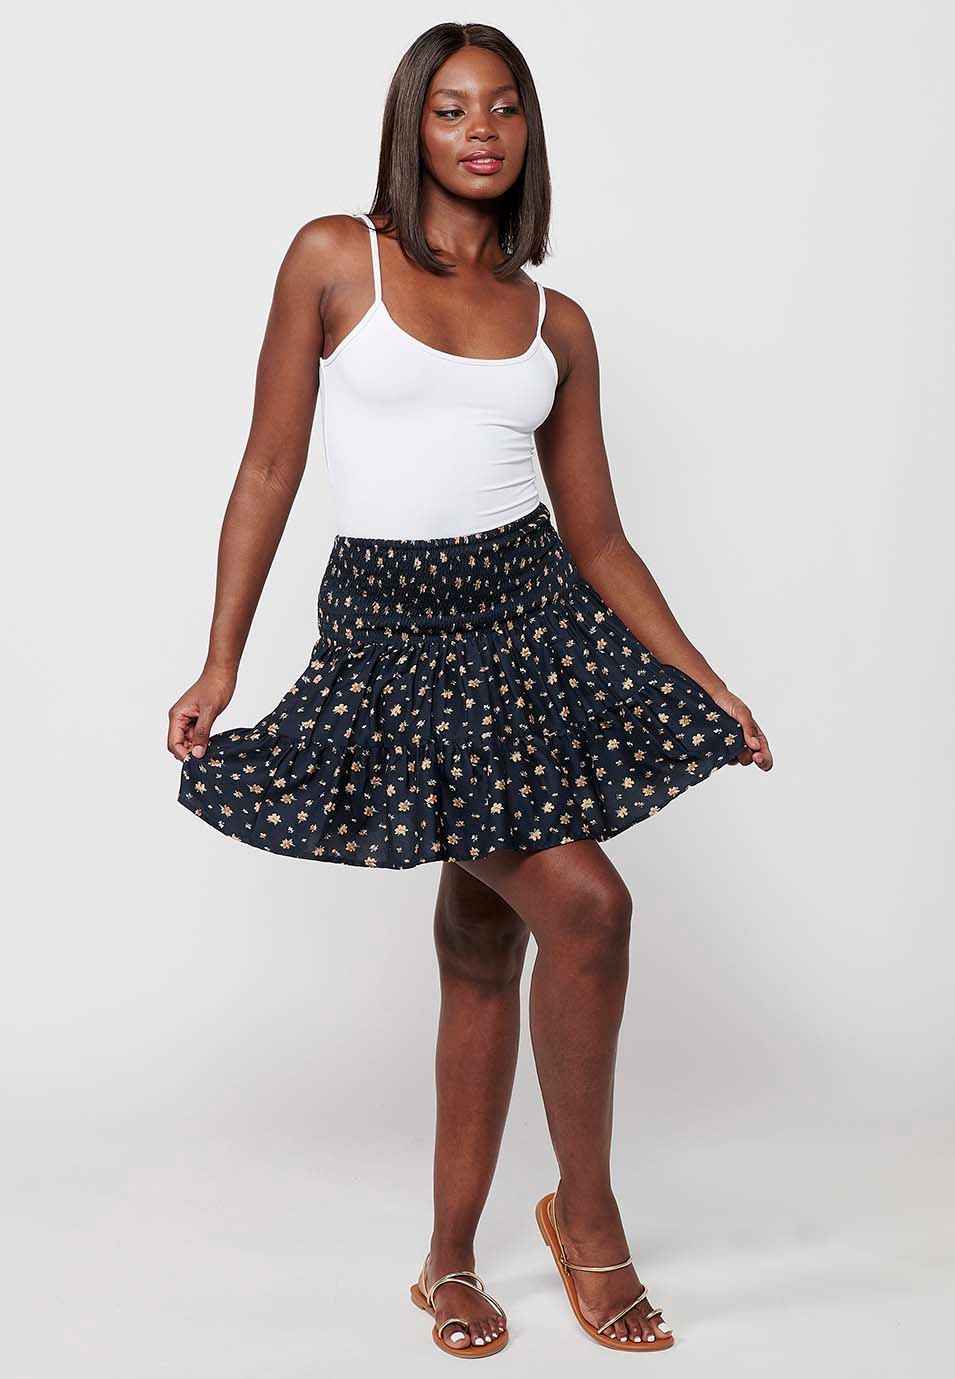 Short skirt, rubberized waist, navy floral print for women